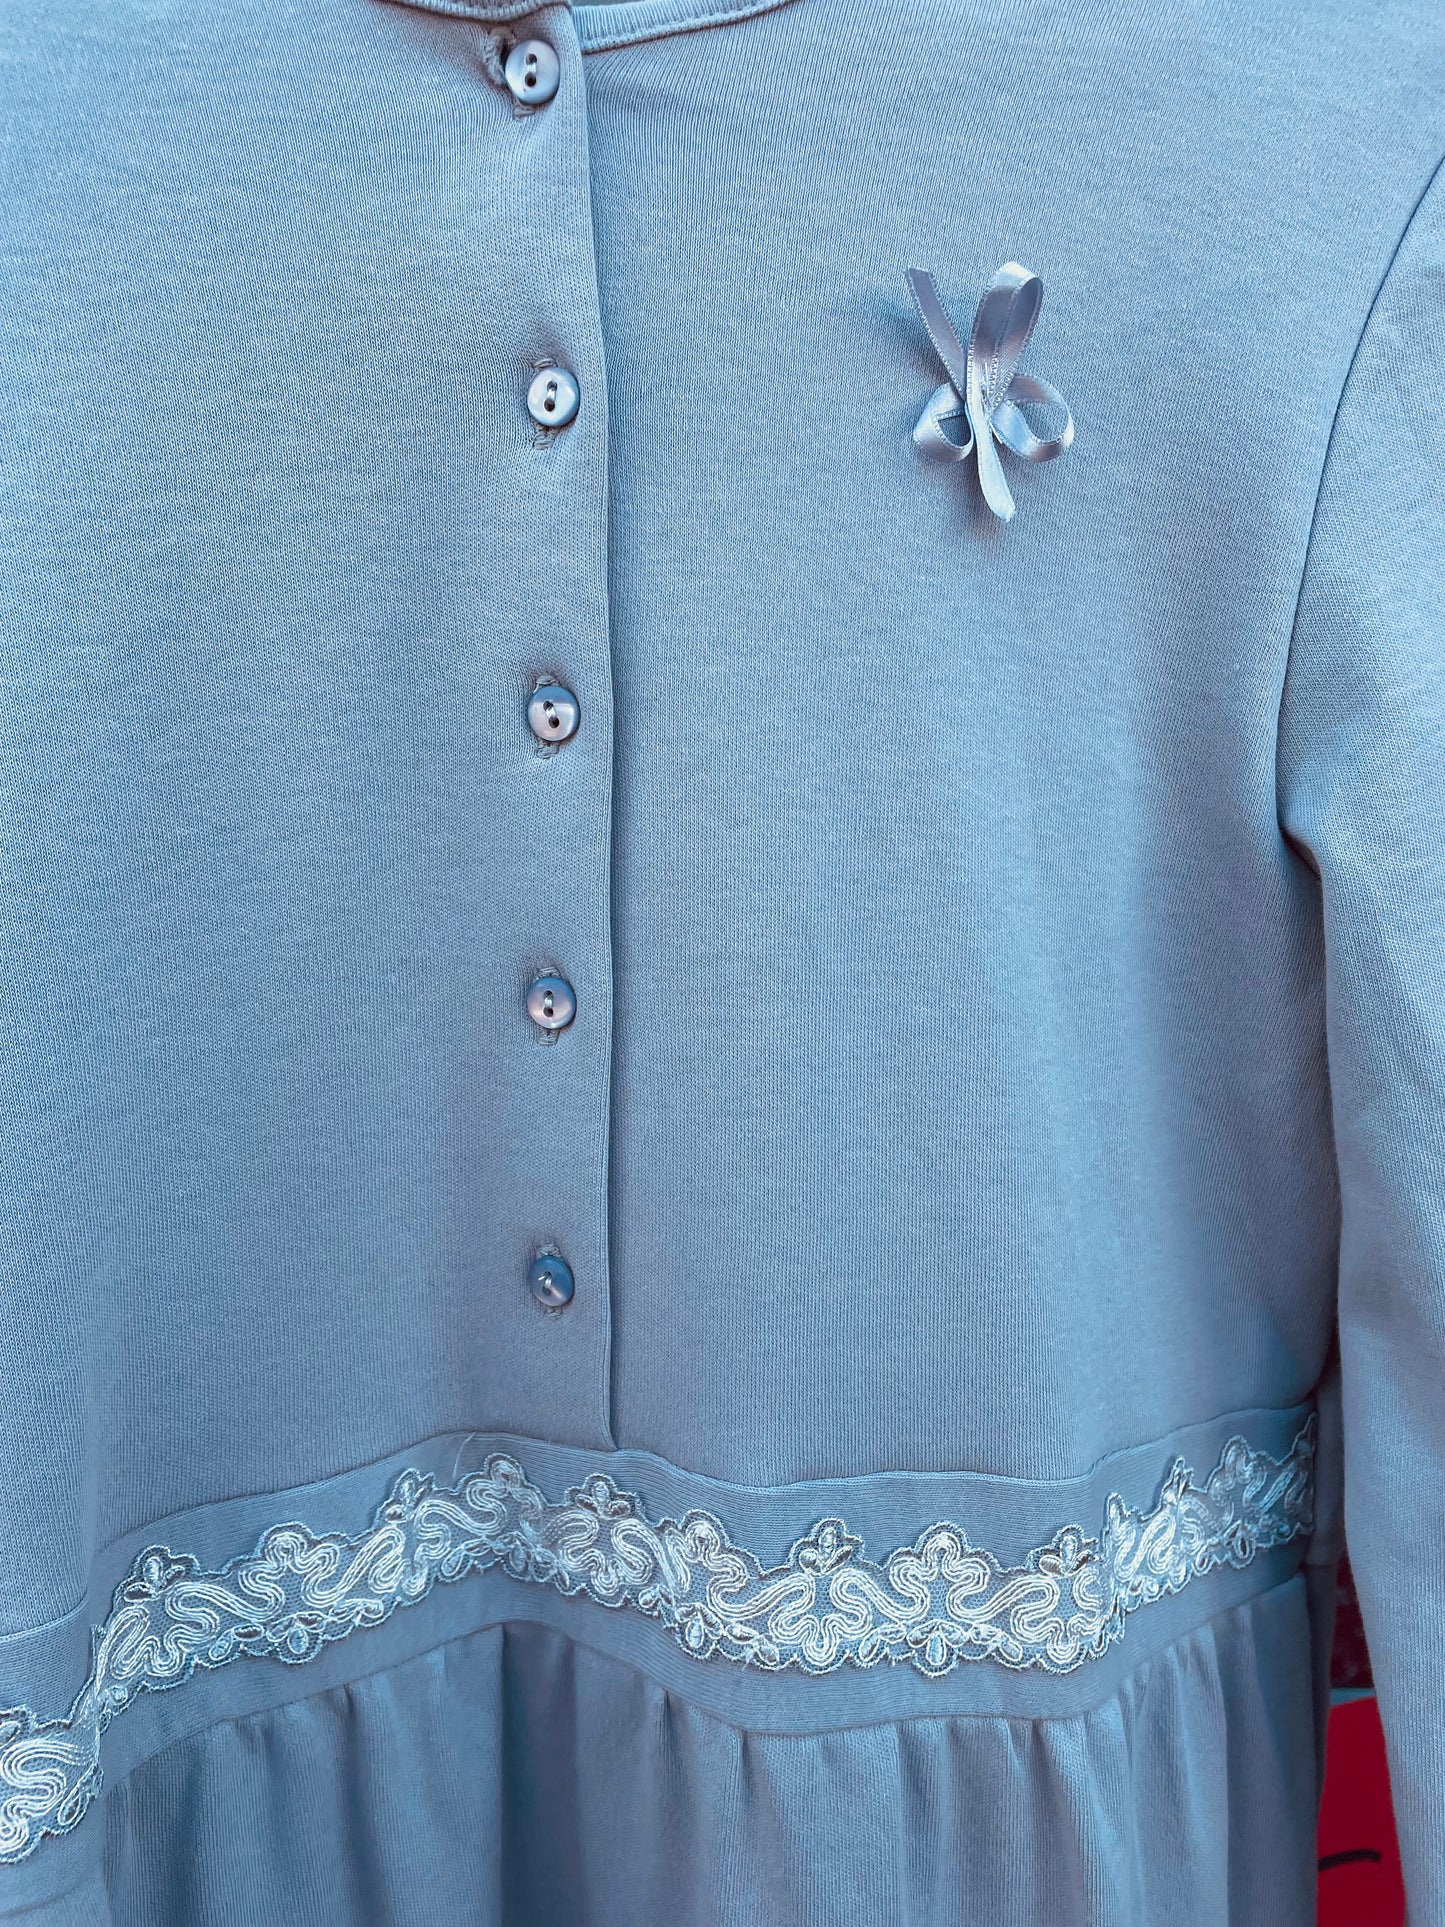 Camicia da notte modello Serafino in cotone